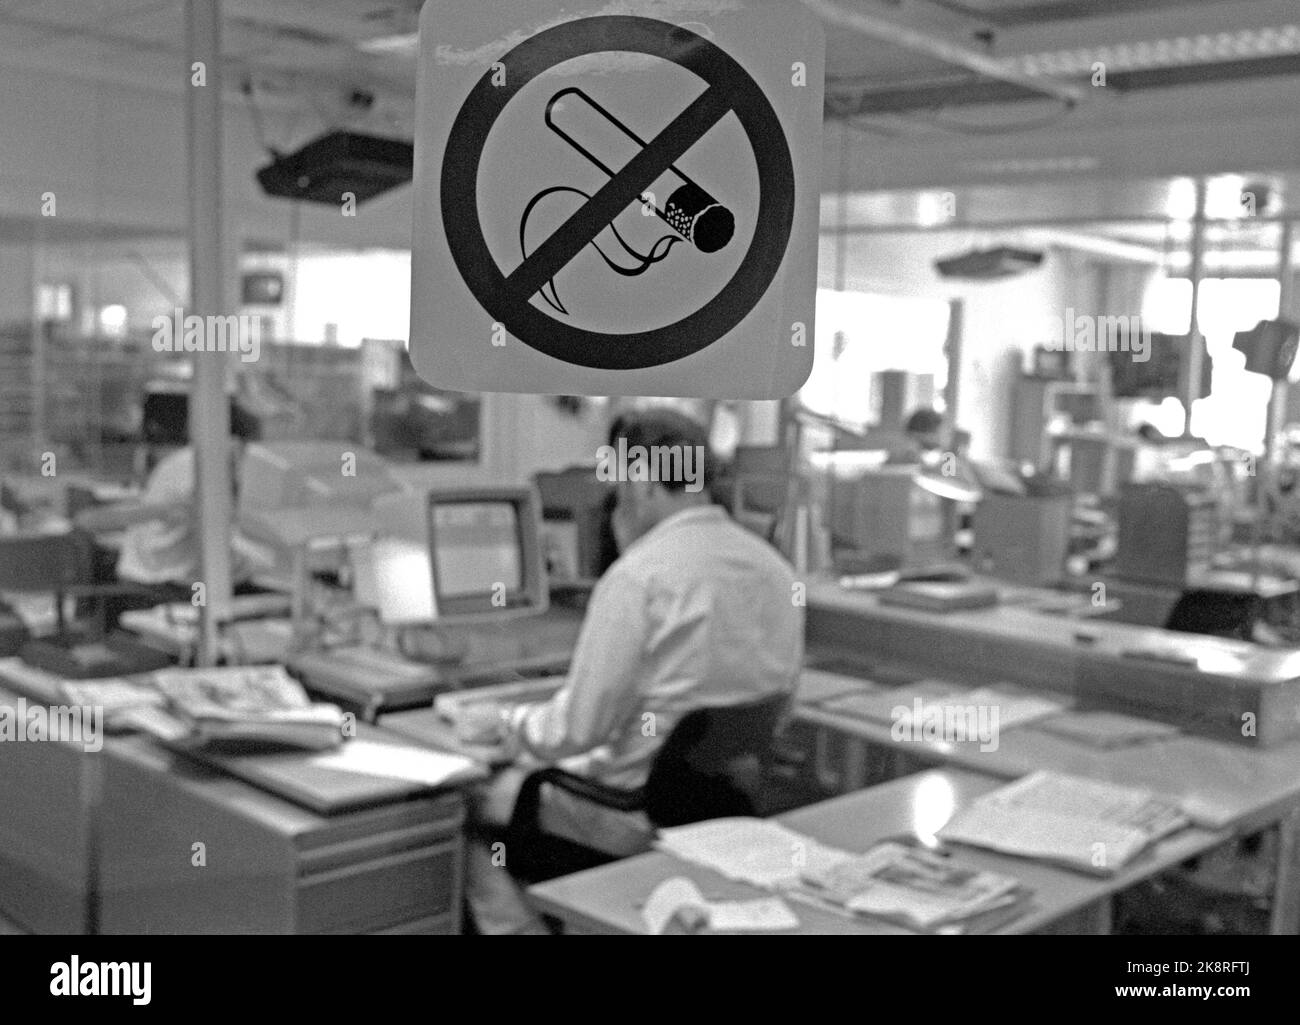 Oslo 19880620: Divieto di fumare sul luogo di lavoro. La nuova legge sul fumo entra in vigore il 1° luglio 1988. La legge sul fumo si applica all'ambiente di lavoro e agli ambienti pubblici comuni. Questa sarà la situazione in molti posti di lavoro quando la legge entrerà in vigore. Qui dalla redazione di NTB. Segnali di divieto. Divieto di fumare. Foto: Henrik Laurvik / NTB Foto Stock